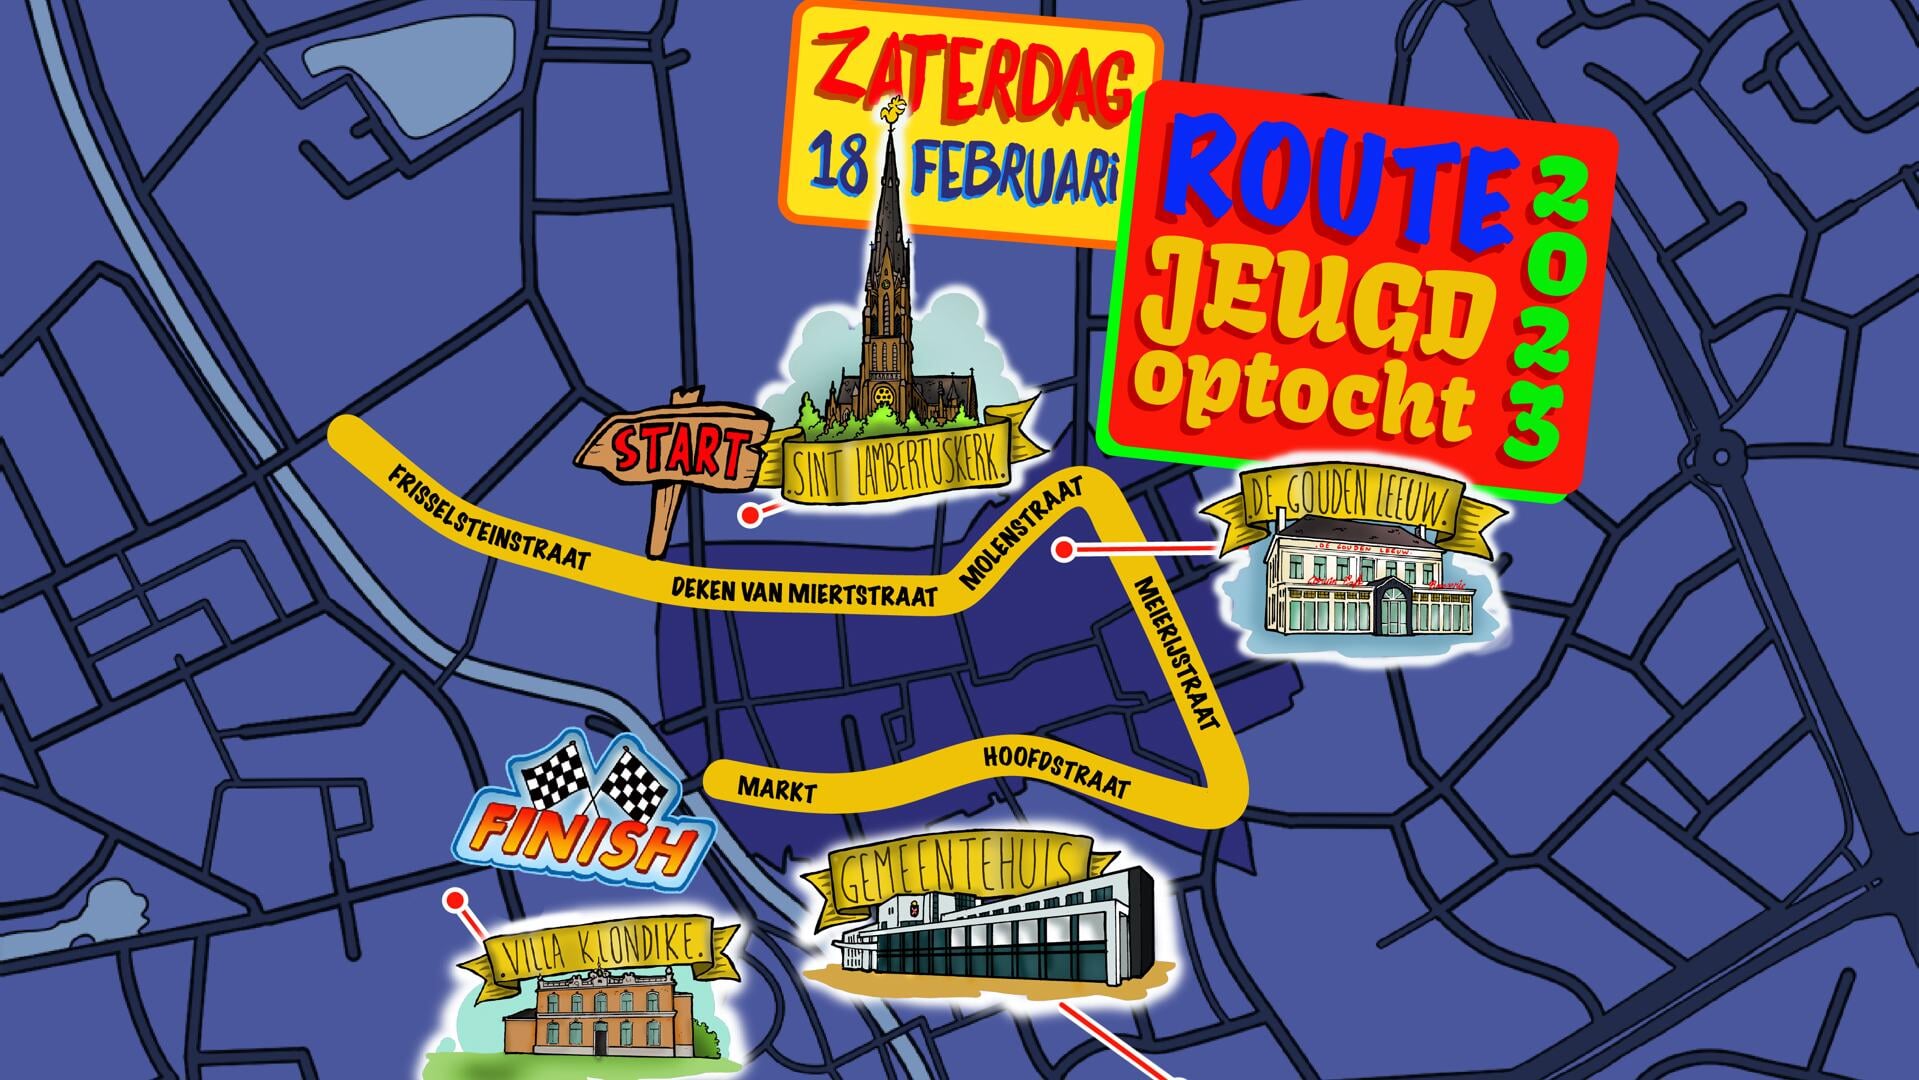 seinpaal Emulatie Articulatie Routes Veghelse carnavalsoptochten drastisch gewijzigd, een aantal wegen  worden afgesloten - Adverteren Veghel | Stadskrant Veghel | Krant en Online